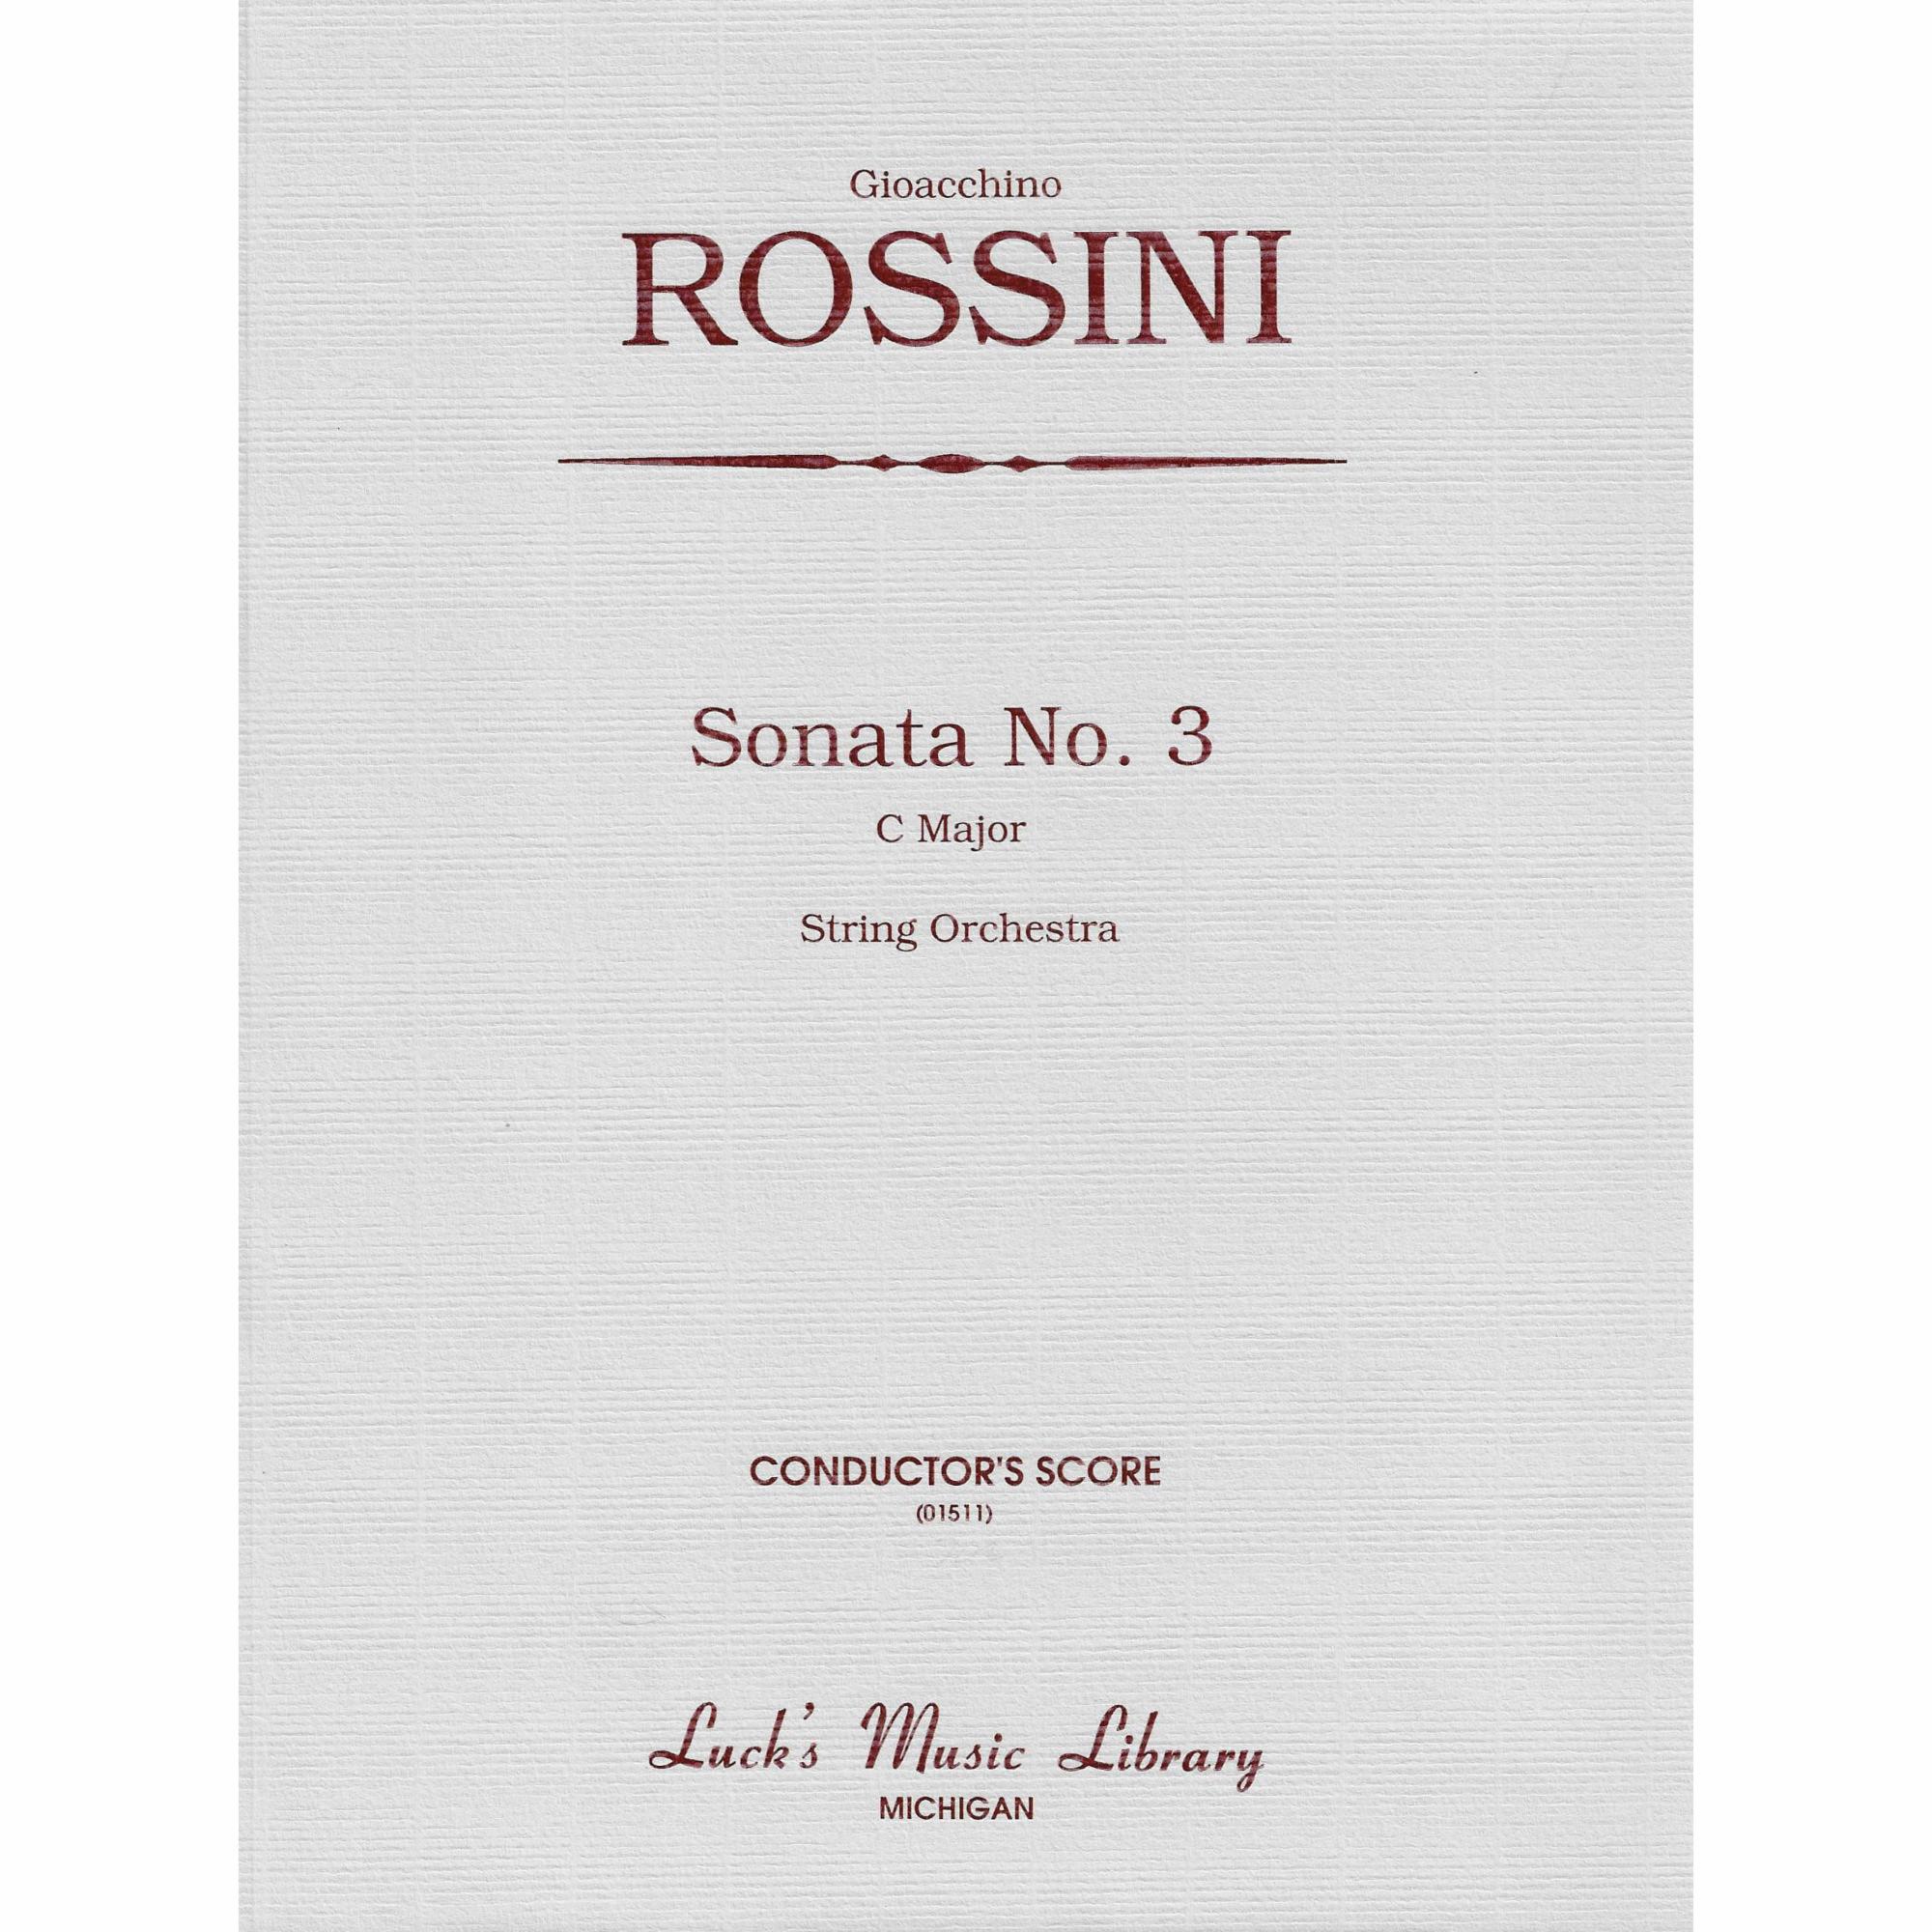 Rossini -- Sonata No. 3 in C Major for String Orchestra